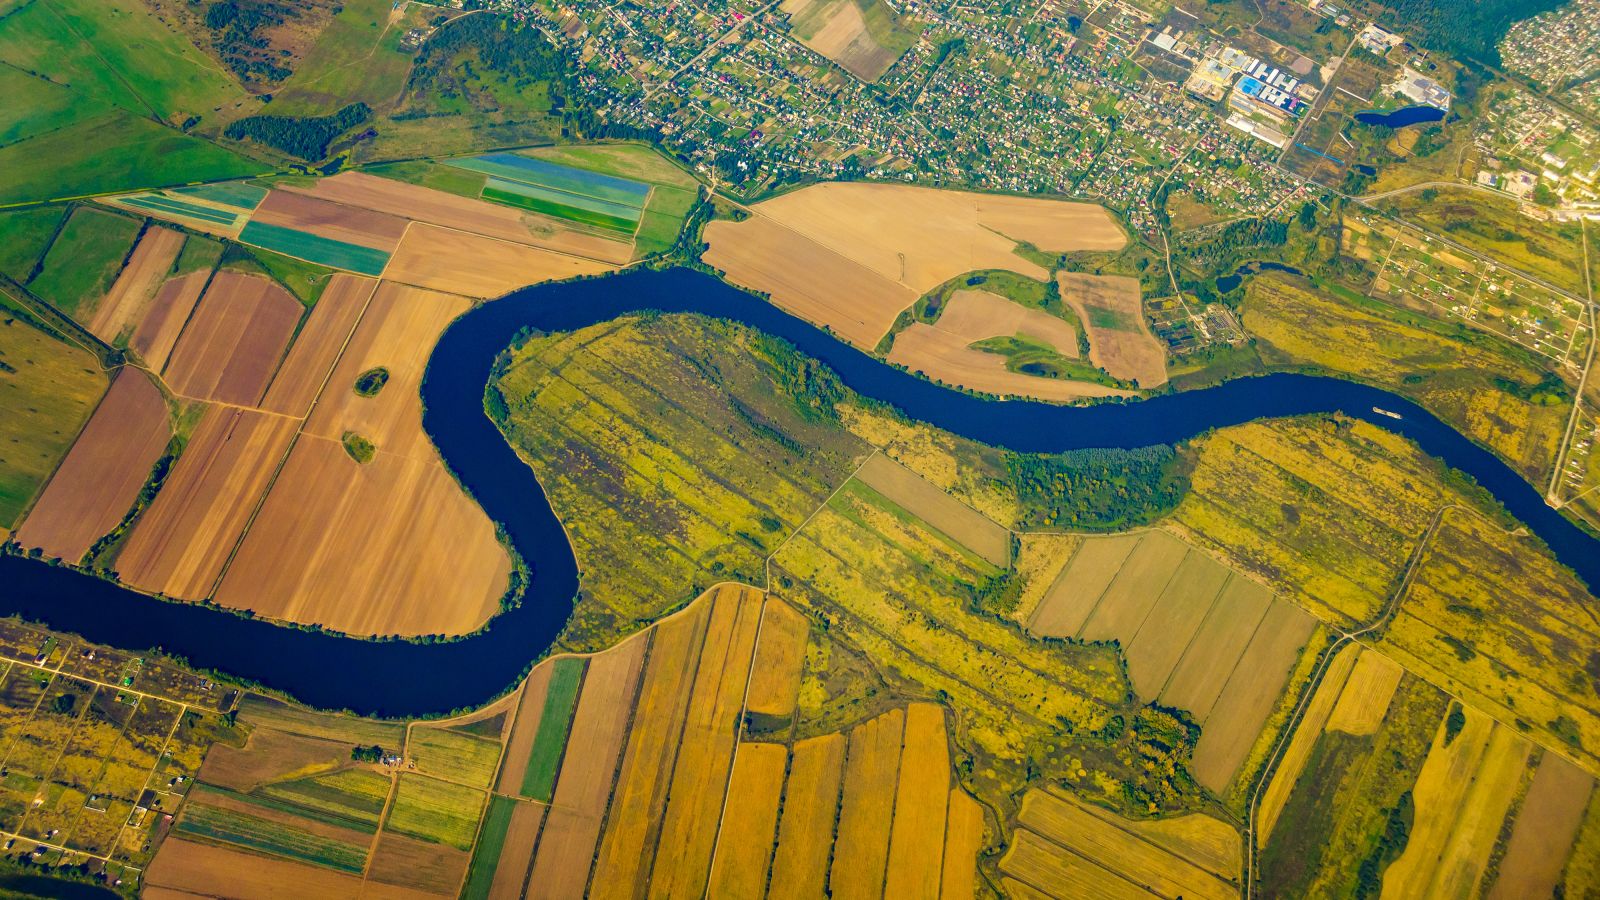 Vogelperspektive auf einen Fluss, welcher durch landwirtschaftlich genutzte Flächen mäandert. Am oberen Rand ist ein Siedlungsgebiet zu sehen.  